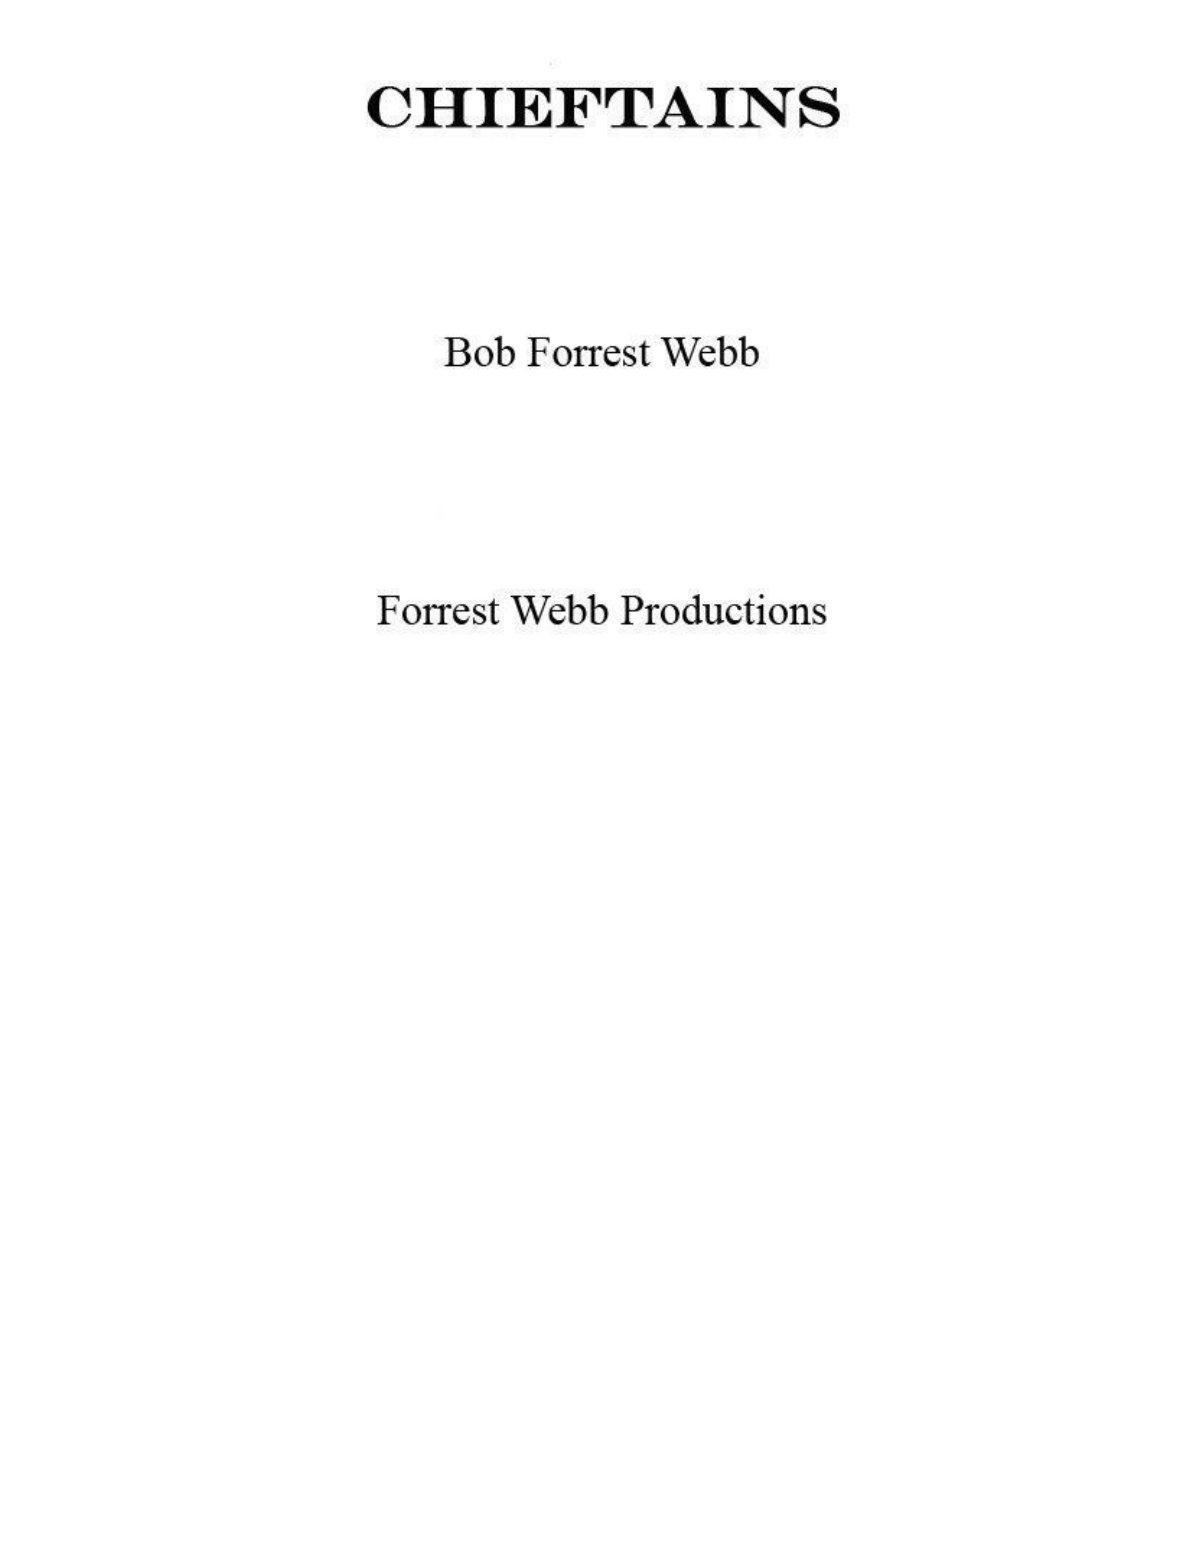 Pizza Garten Helmstedt Frisch Bob forrest Webb Chieftains Epub [pdf Document]